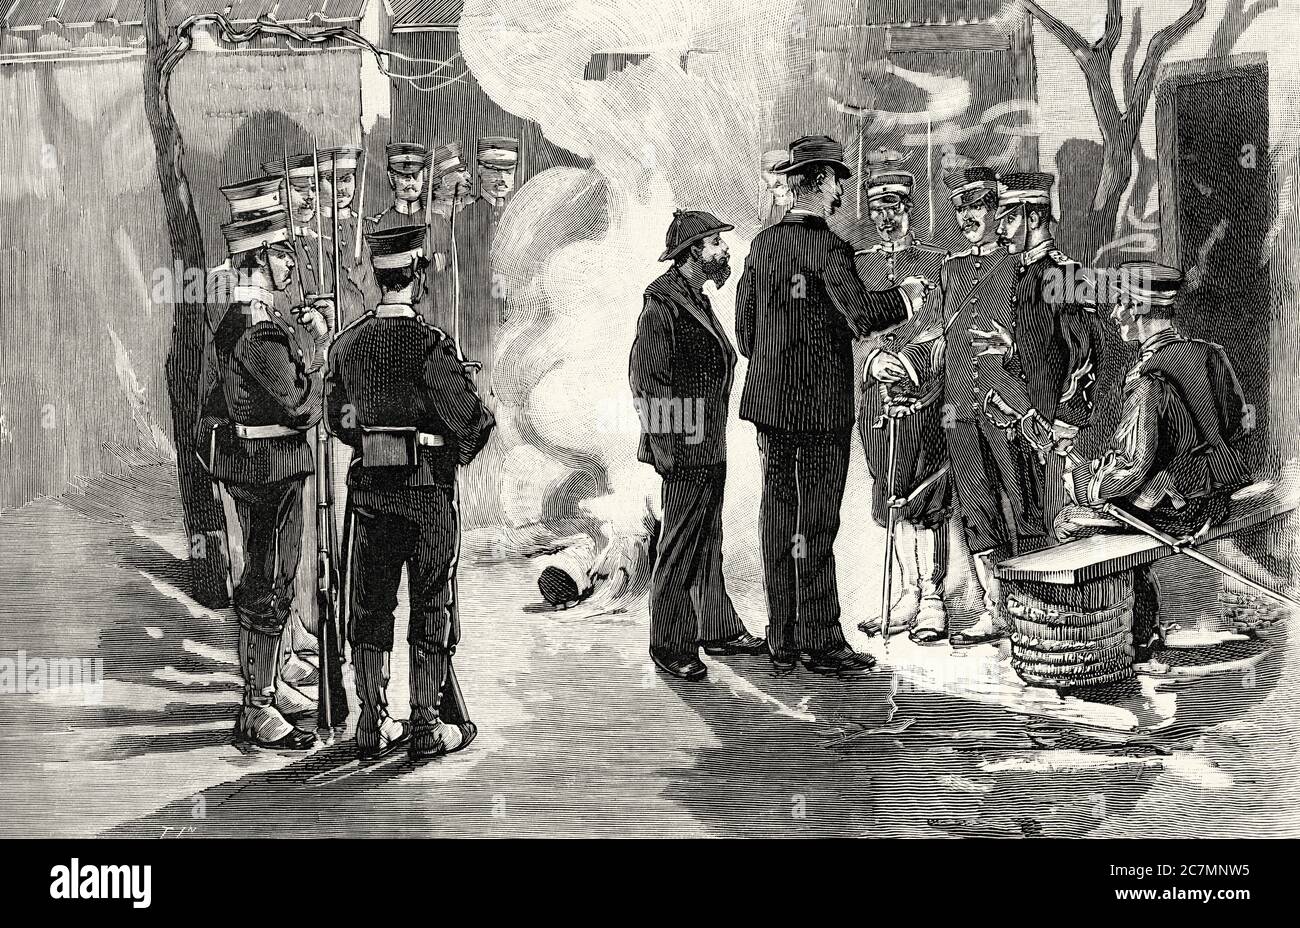 Première guerre sino-japonaise. Prisonniers européens des Japonais au siège de Port Arthur. De la Ilustracion Española y Americana 1895 Banque D'Images